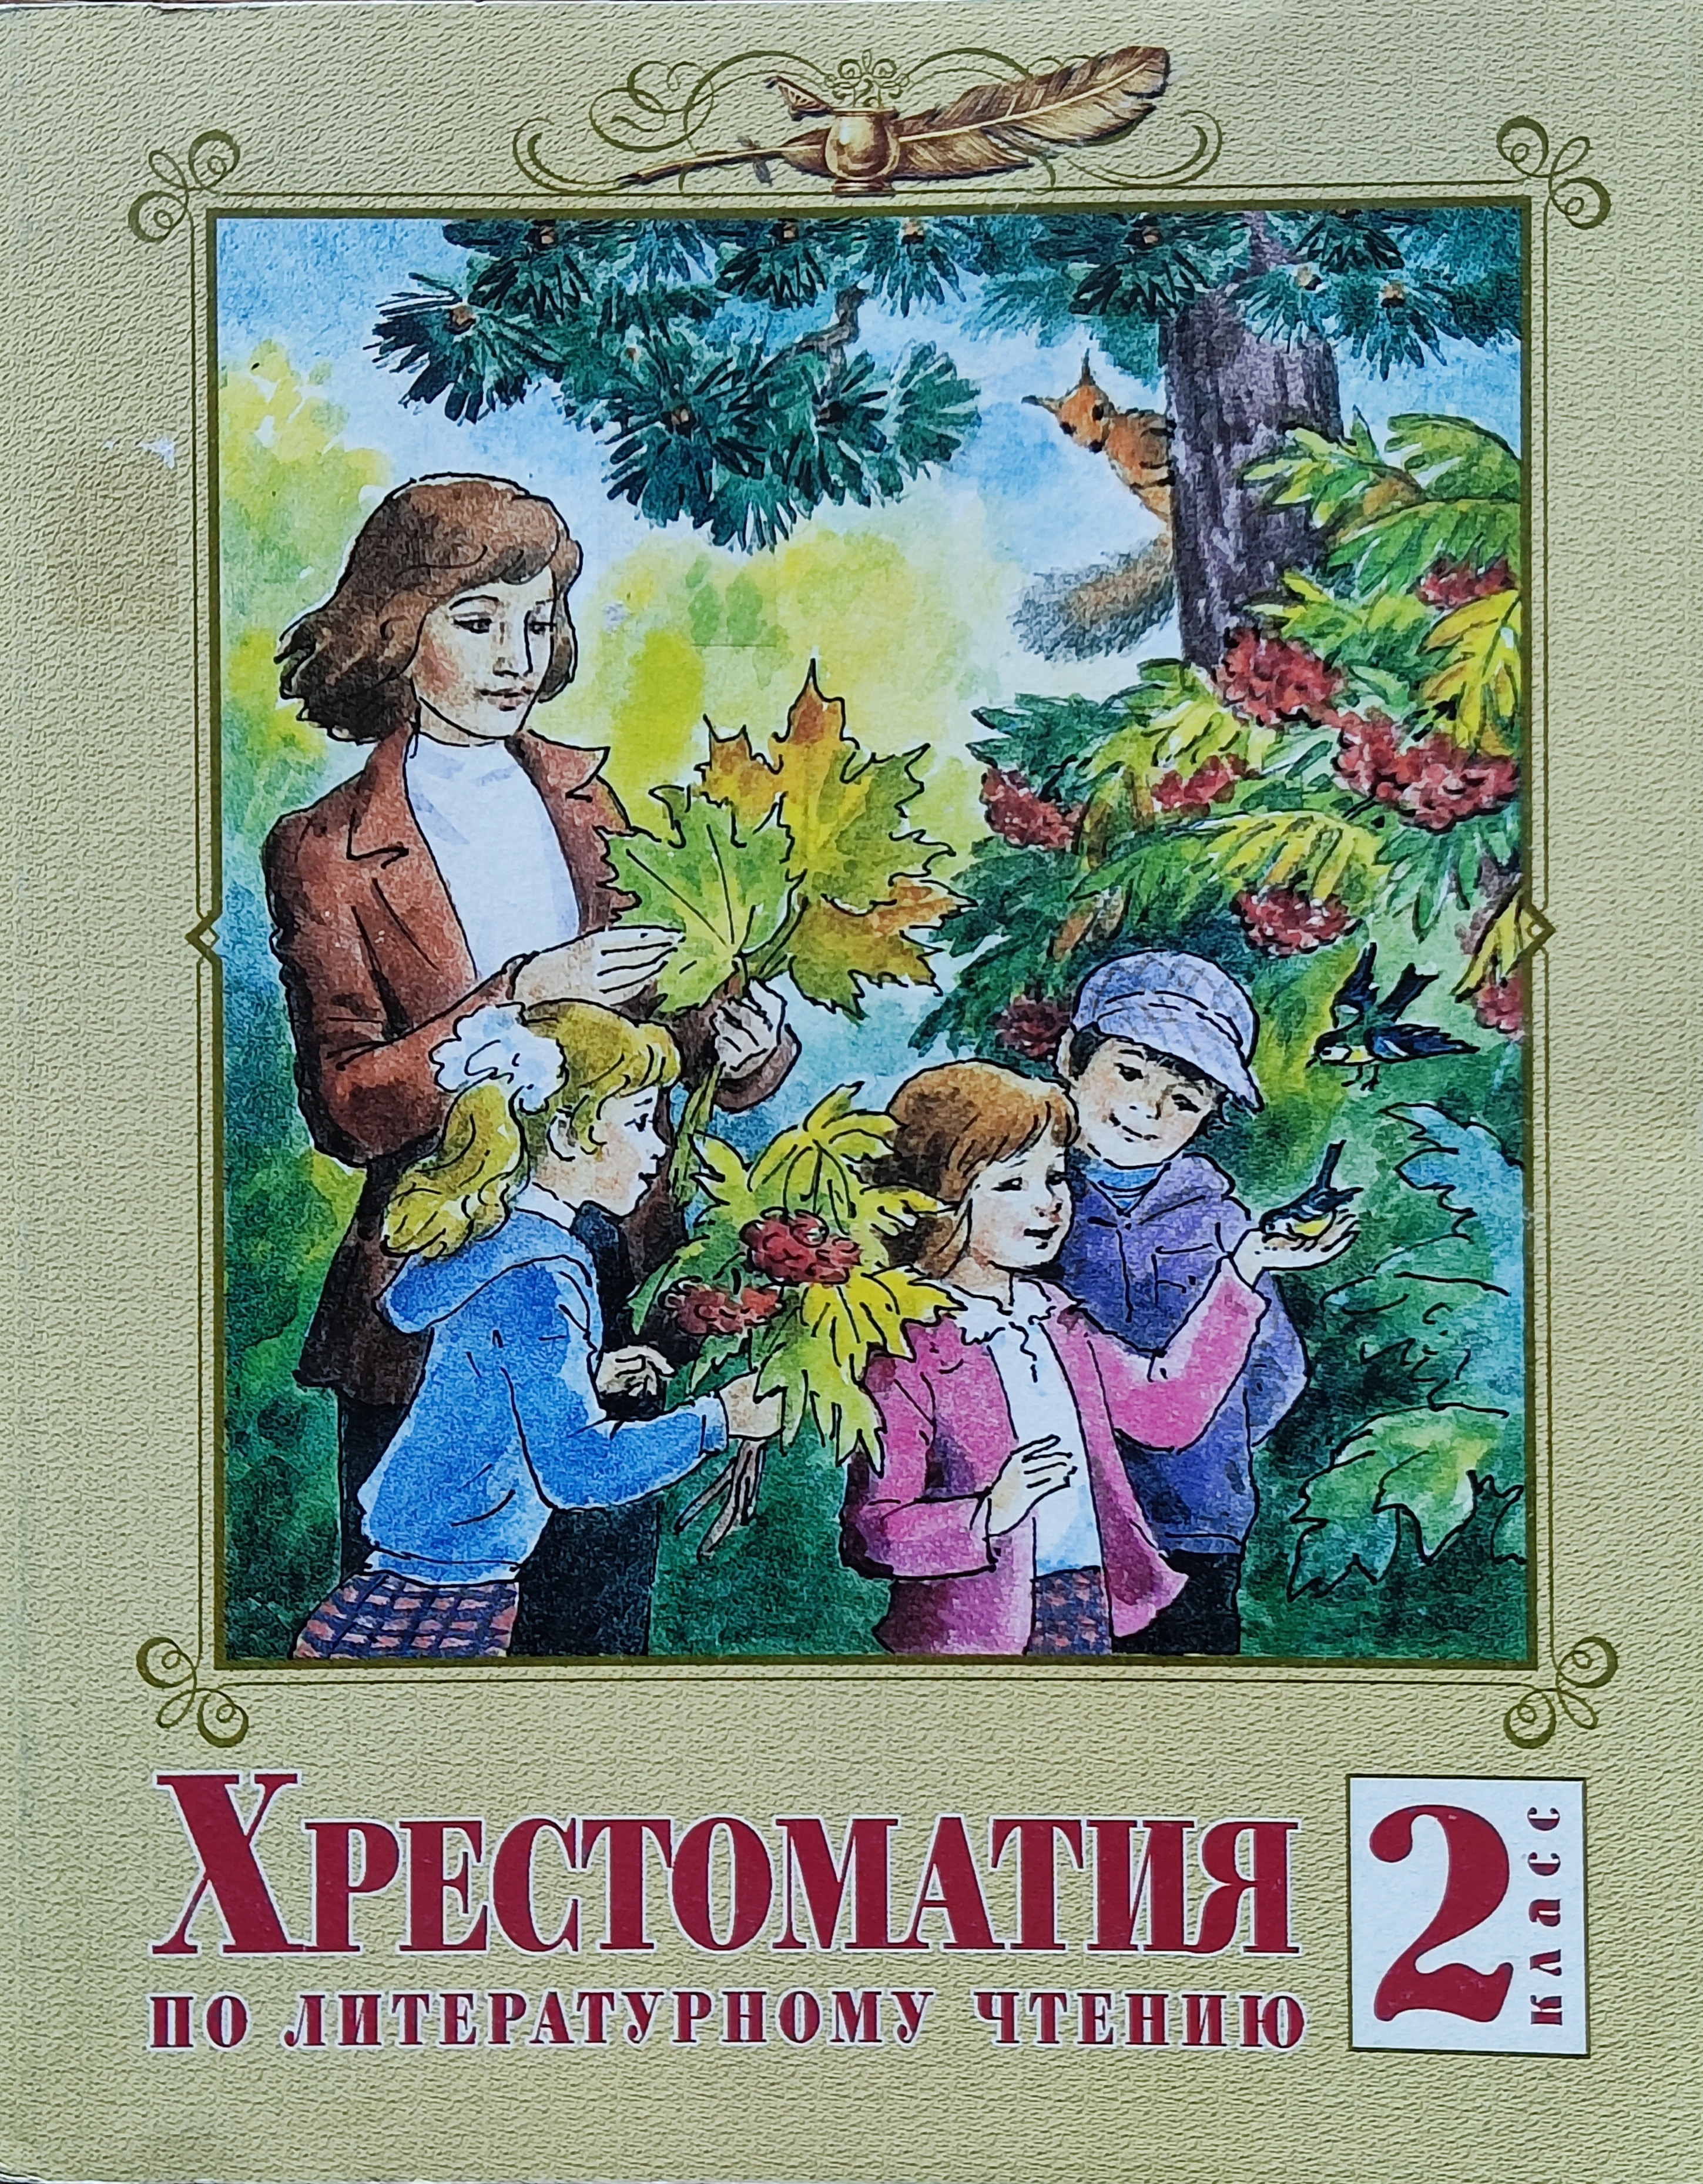 Литературное чтение лазаревой